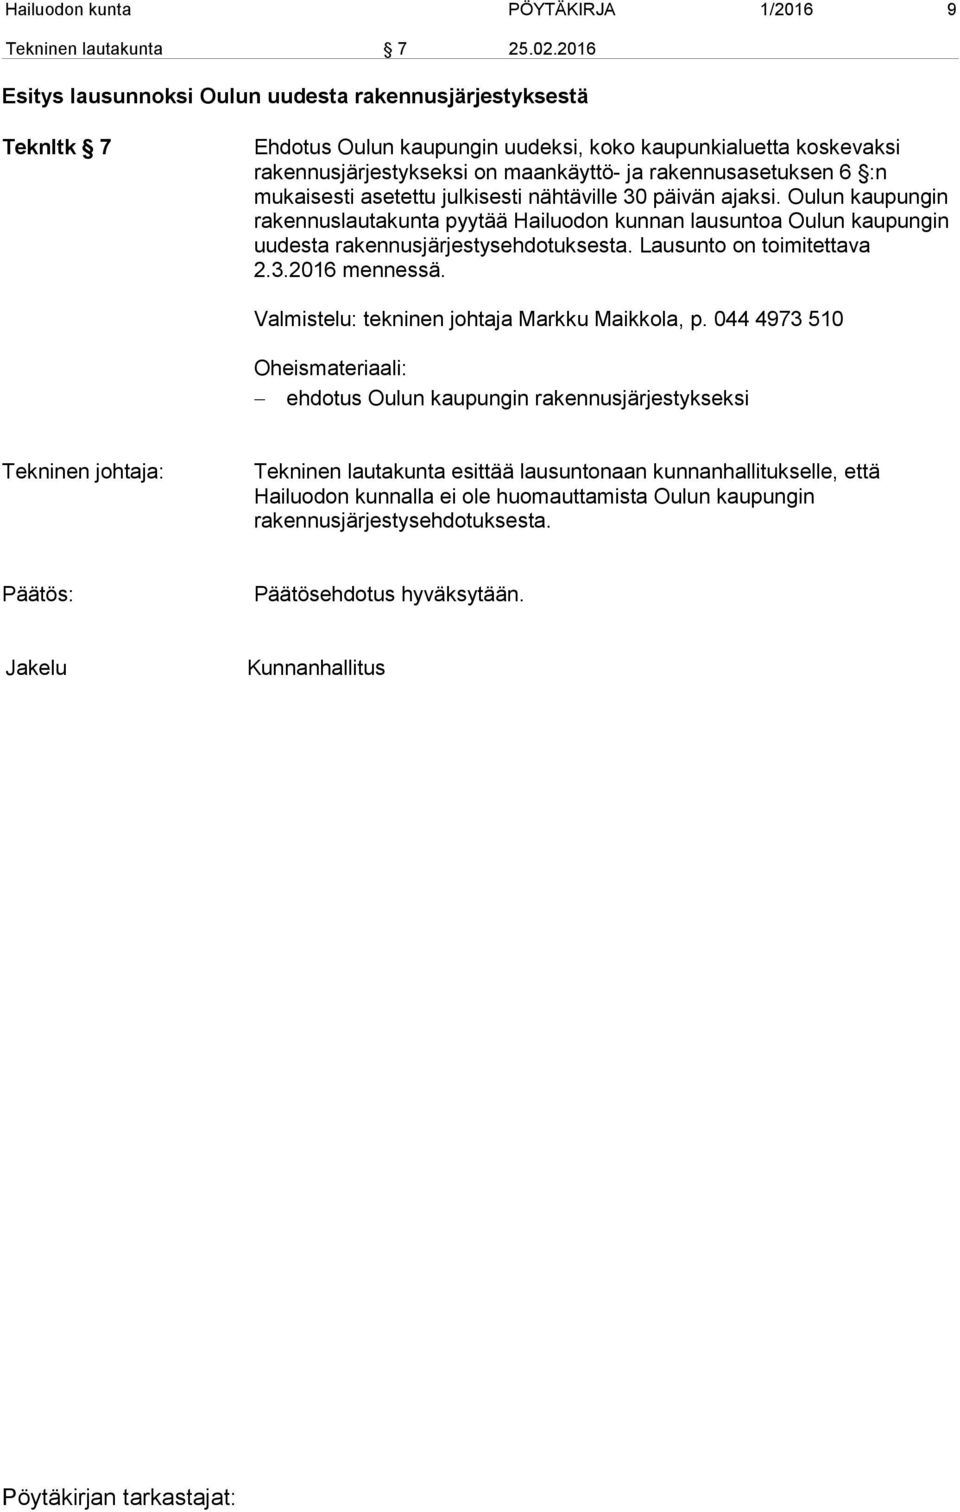 :n mukaisesti asetettu julkisesti nähtäville 30 päivän ajaksi. Oulun kaupungin rakennuslautakunta pyytää Hailuodon kunnan lausuntoa Oulun kaupungin uudesta rakennusjärjestysehdotuksesta.